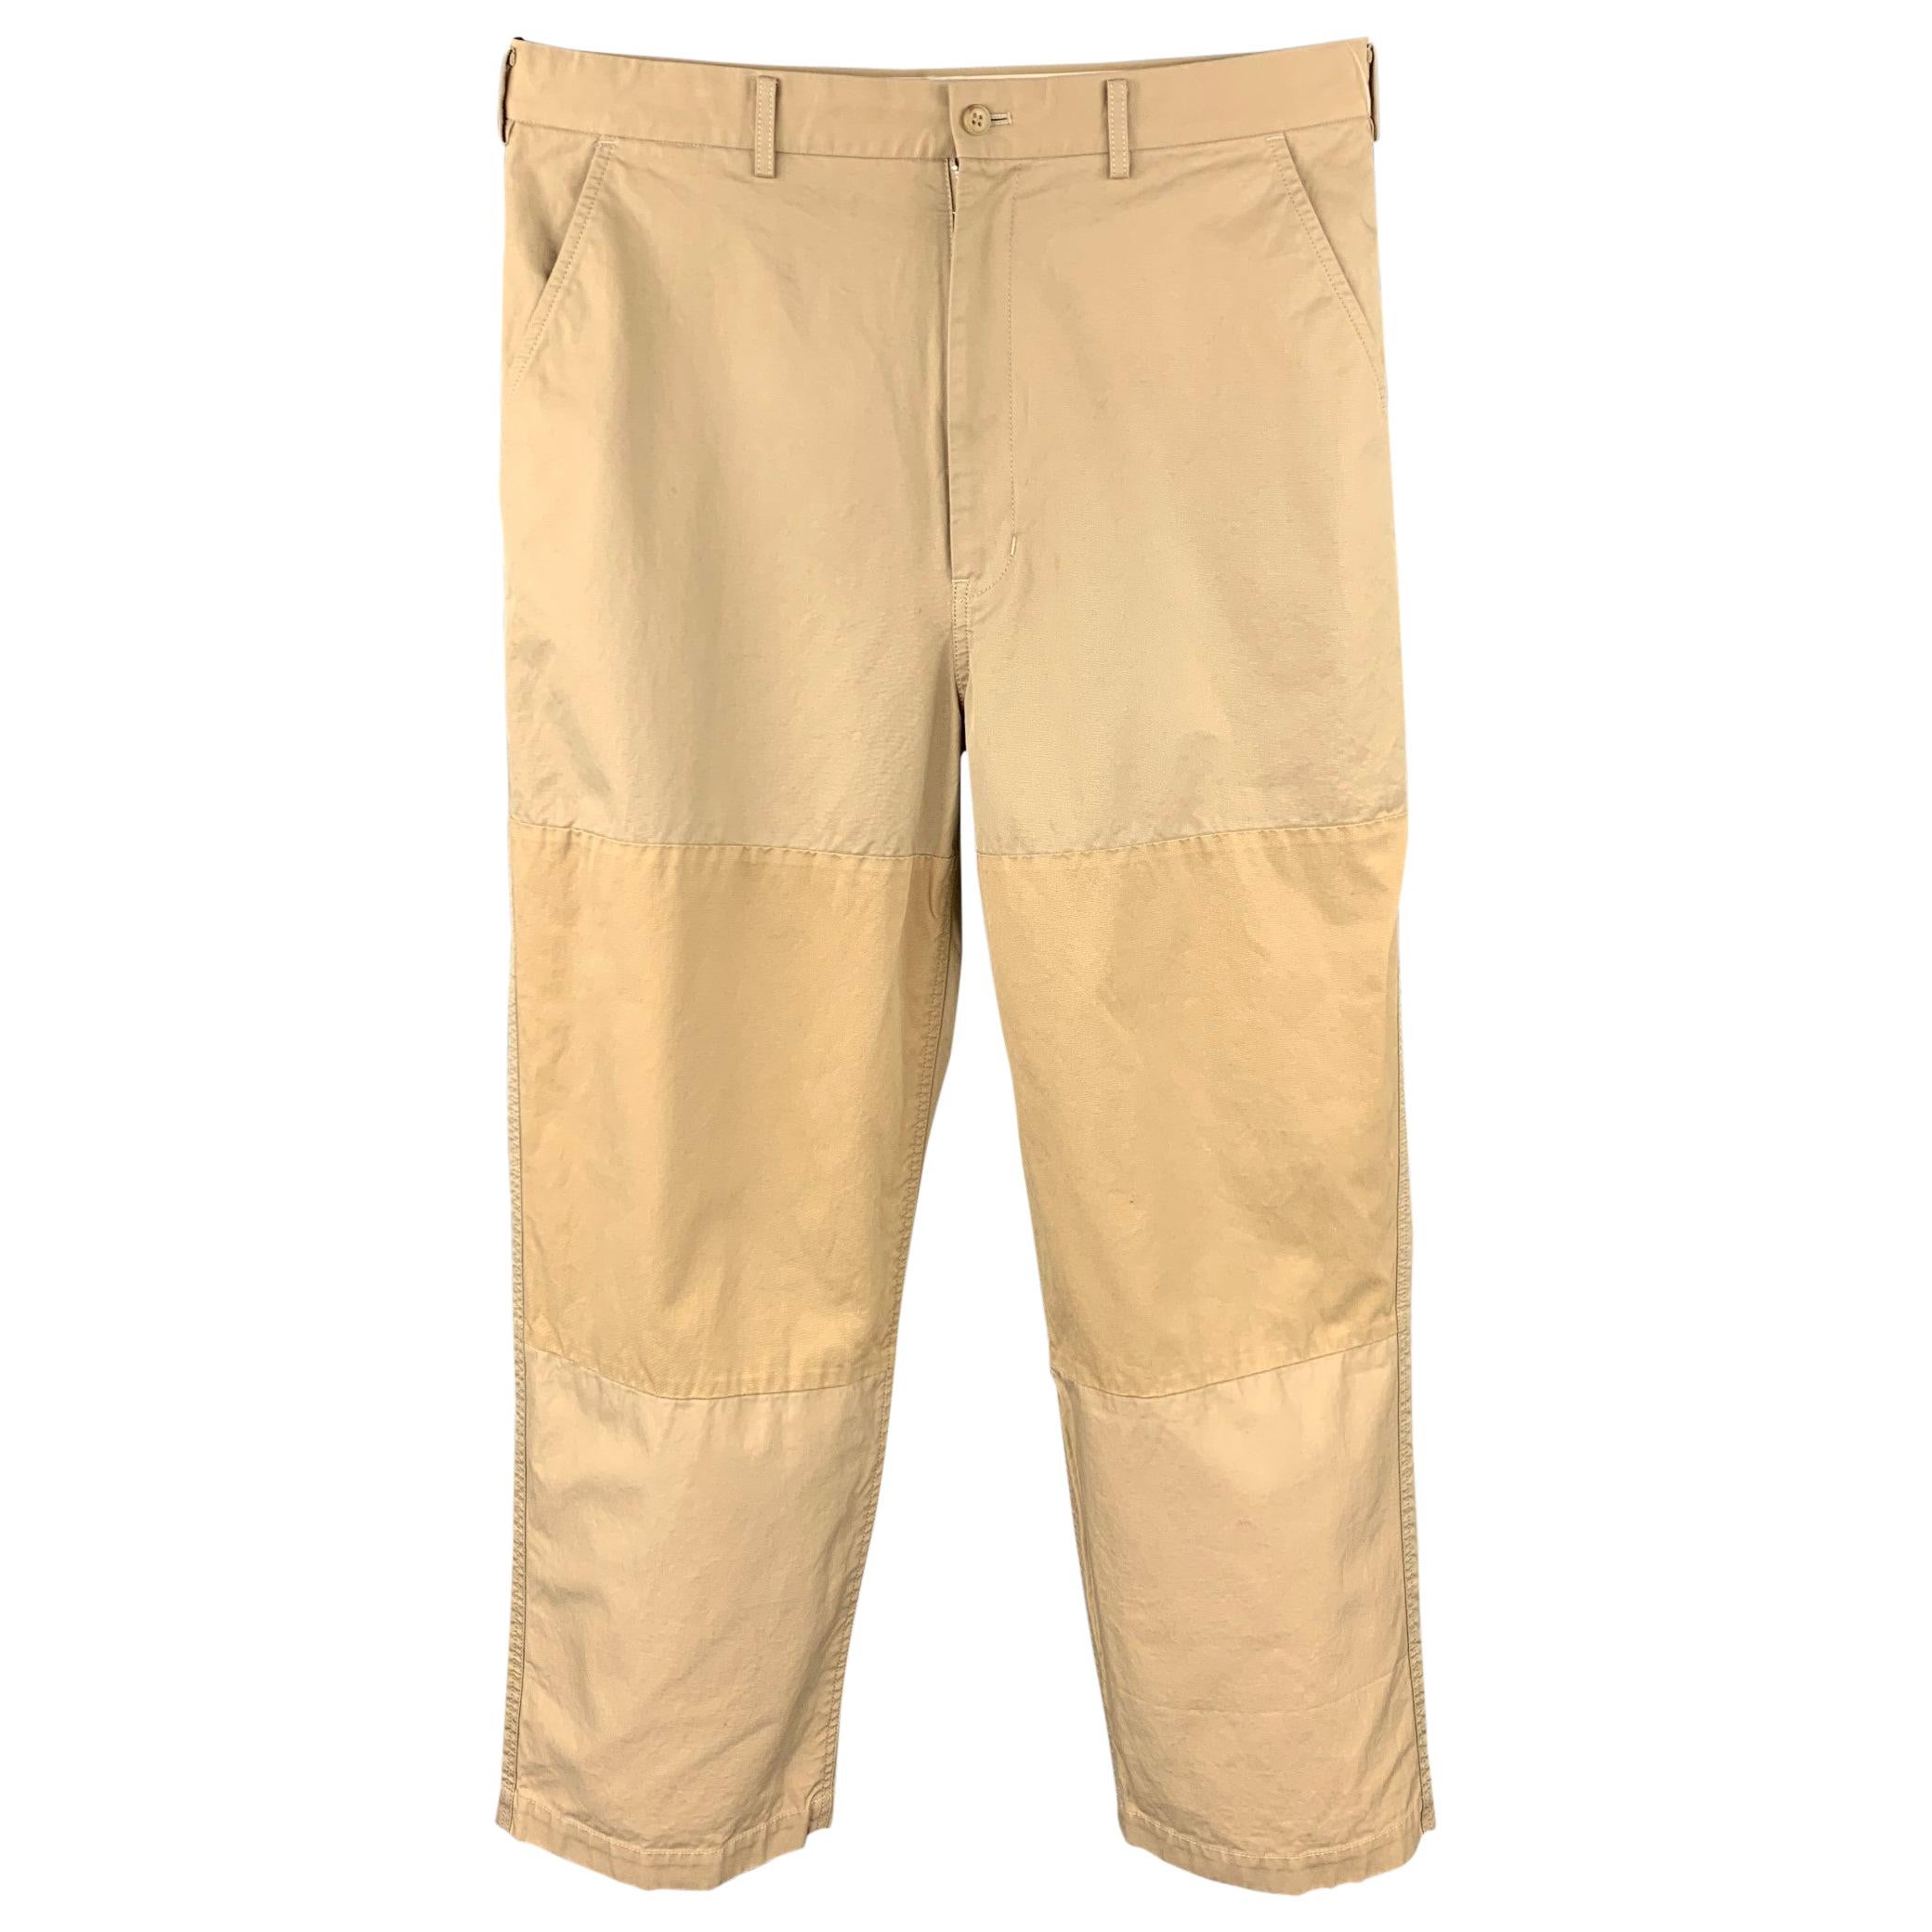 COMME des GARCONS HOMME Size L Khaki Patchwork Cotton Zip Fly Casual Pants